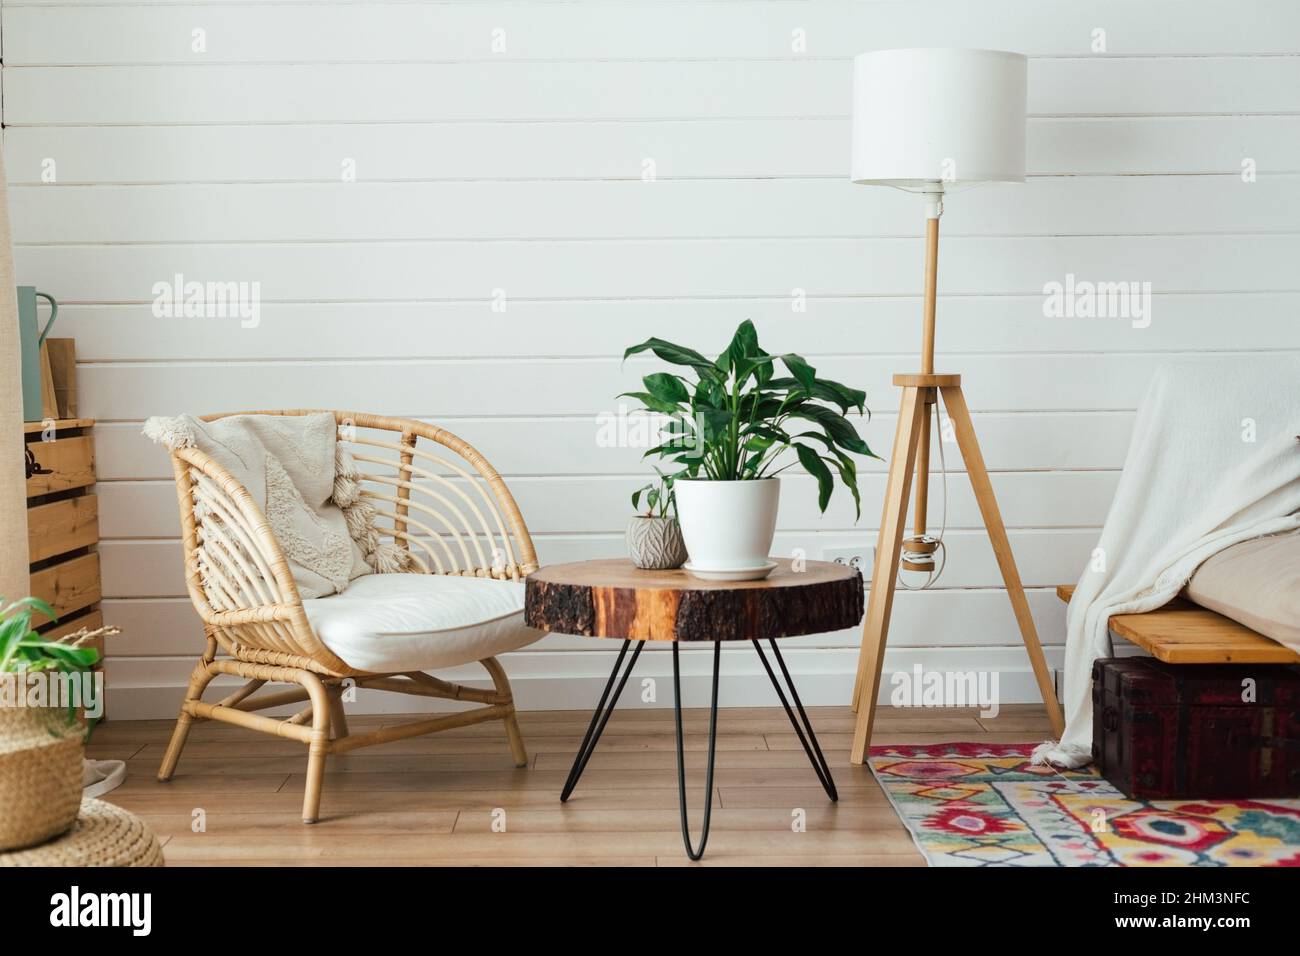 Poltrona in rattan e lampada da pavimento in soggiorno interno con piante.  Interni accoglienti in stile boho. Foto reale Foto stock - Alamy